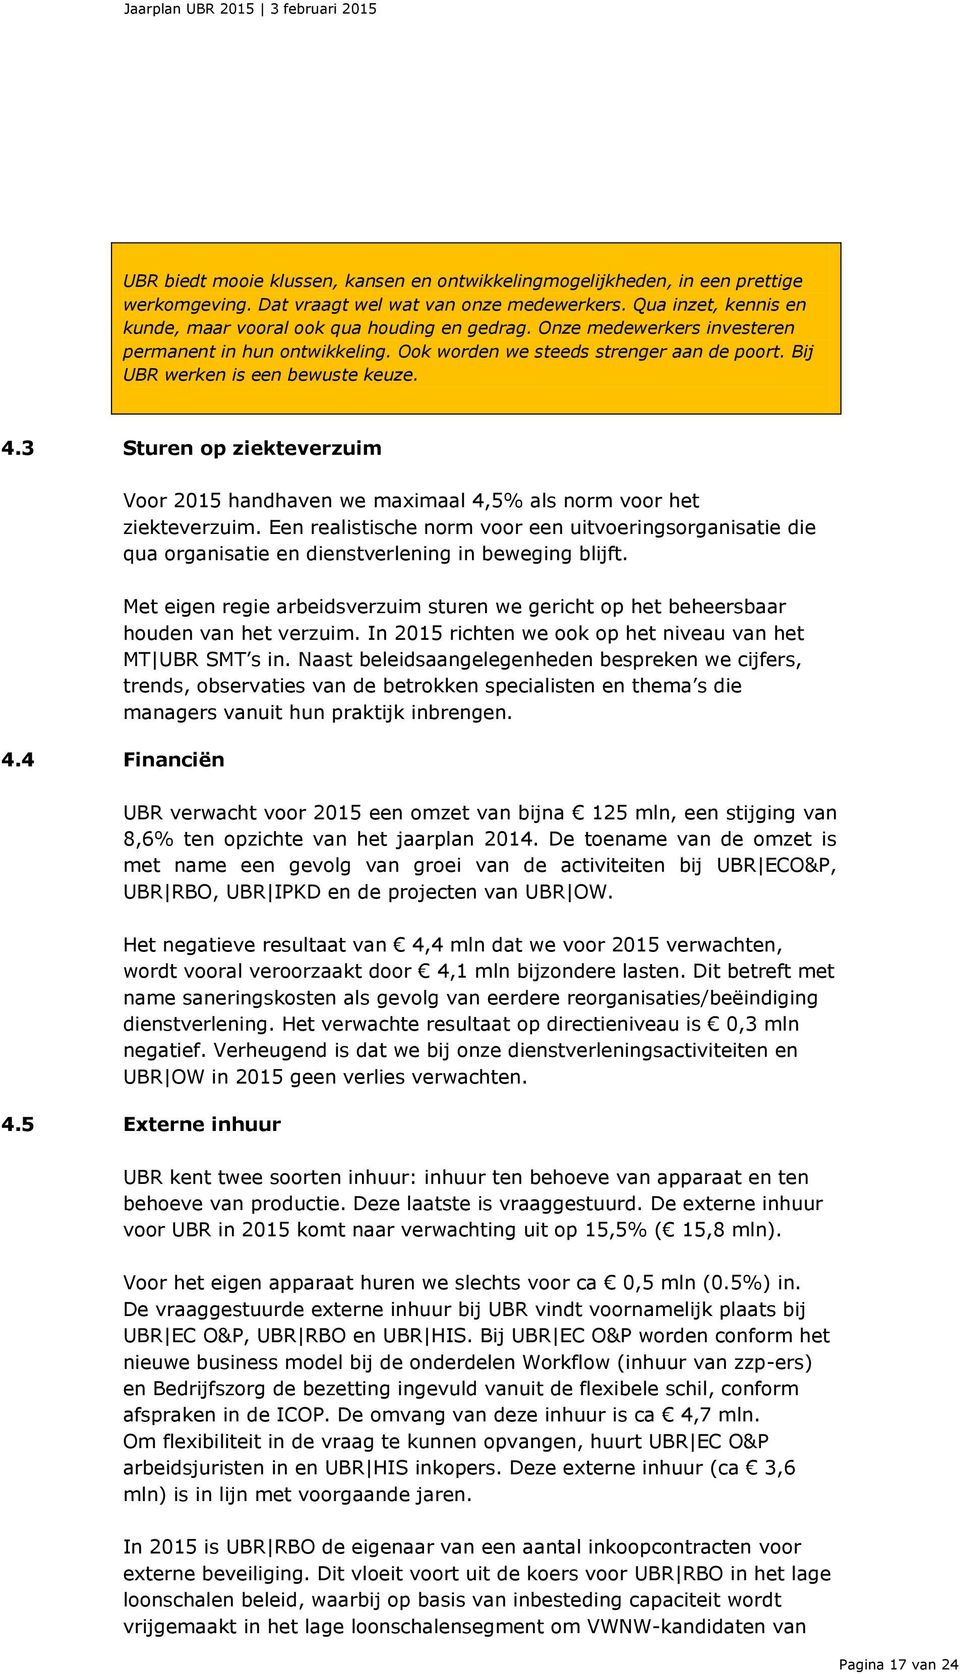 3 Sturen op ziekteverzuim Voor 2015 handhaven we maximaal 4,5% als norm voor het ziekteverzuim.